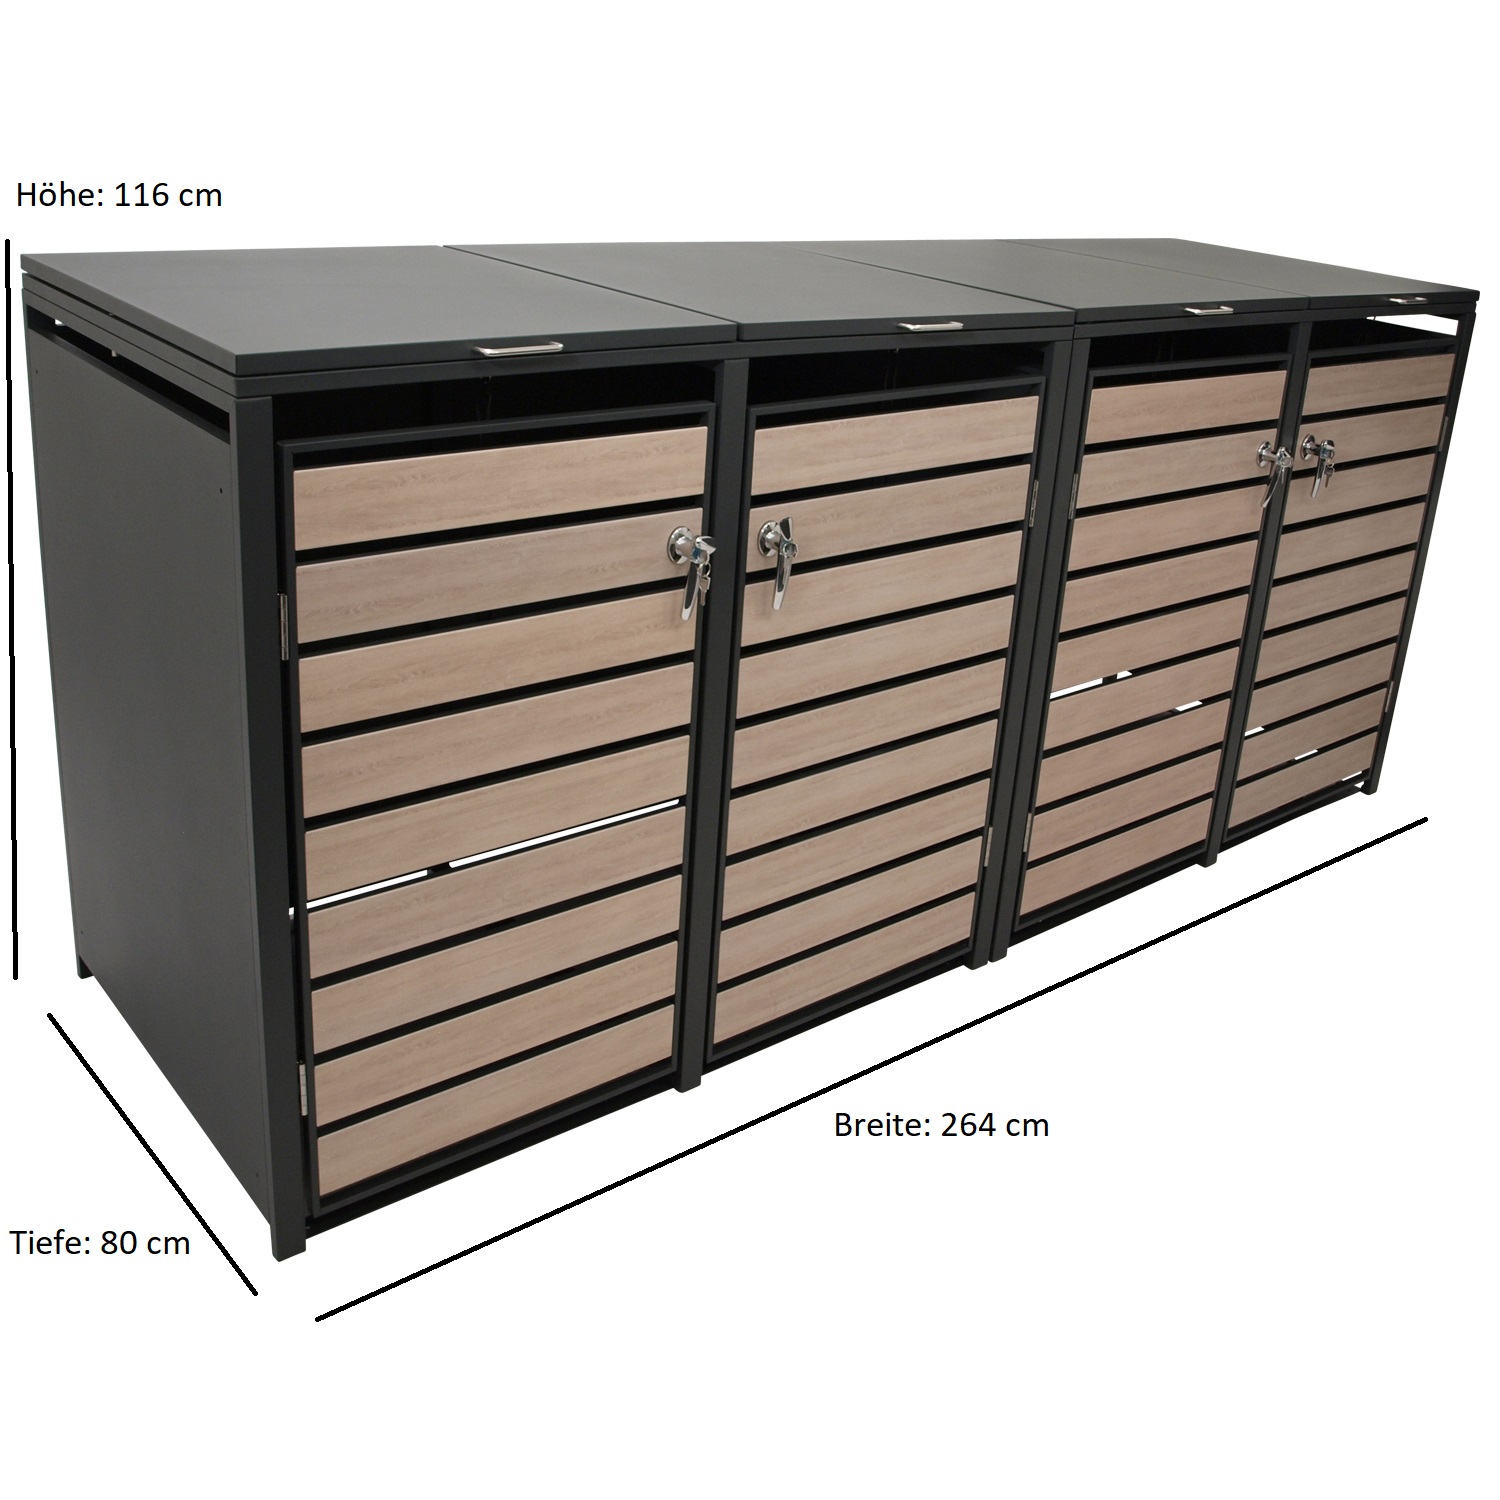 Mülltonnenbox BERLIN Stahl anthrazit mit Türen Holzoptik, 264x80x116cm, für 4x Tonnen 120 und 240 Liter